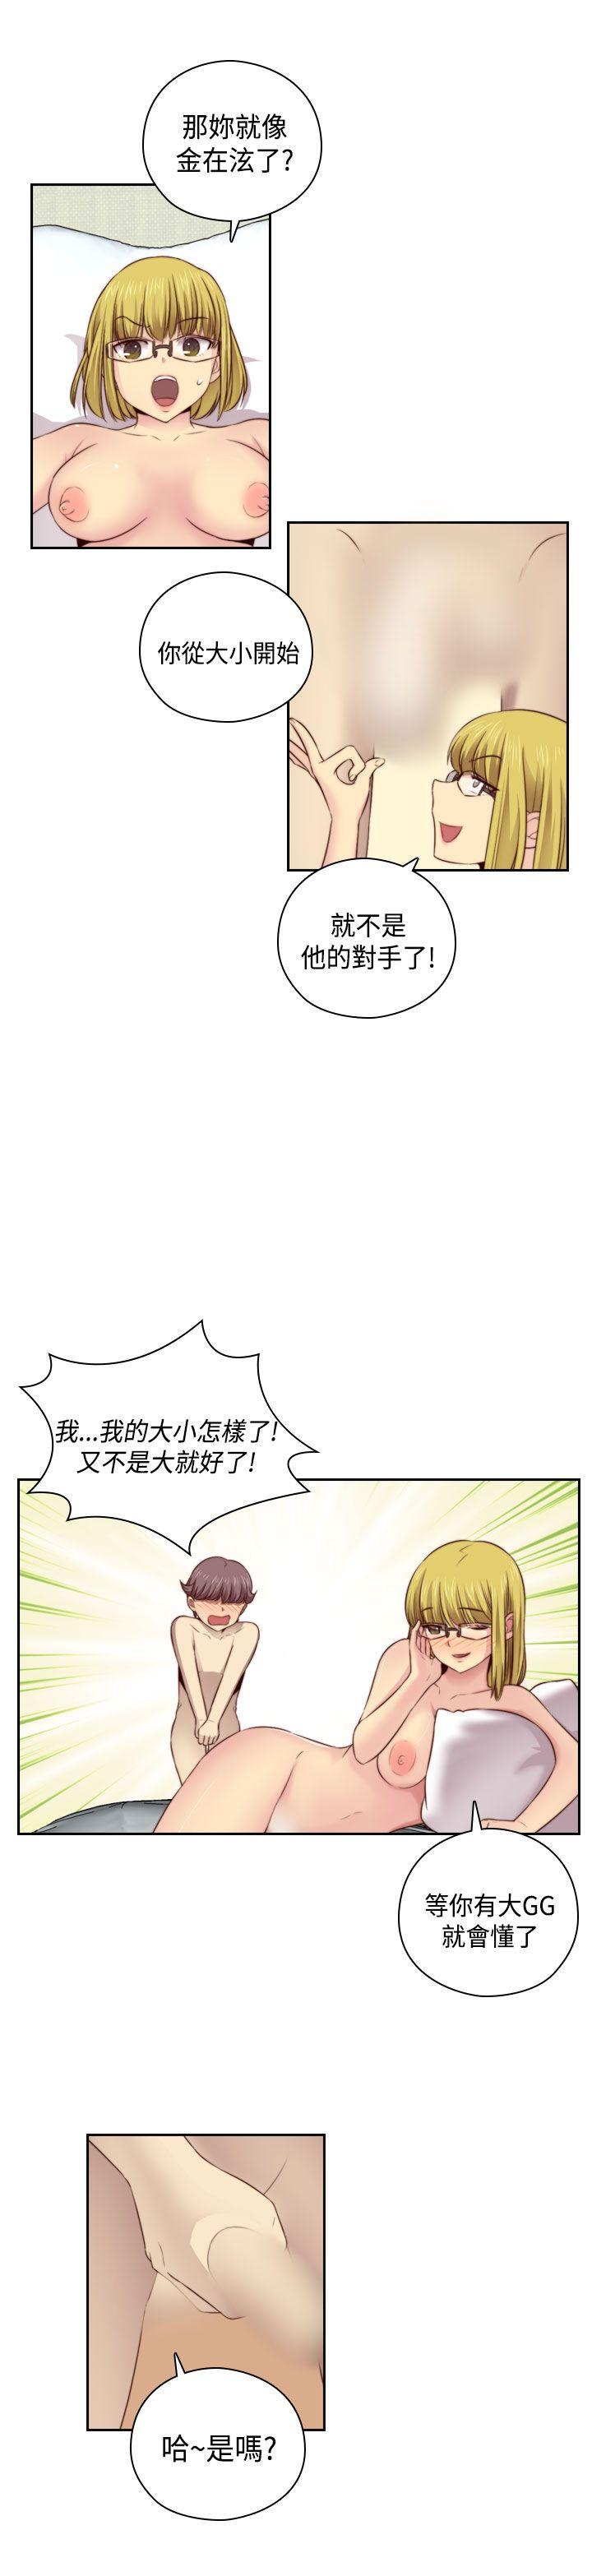 韩国污漫画 H校園 第54话 10